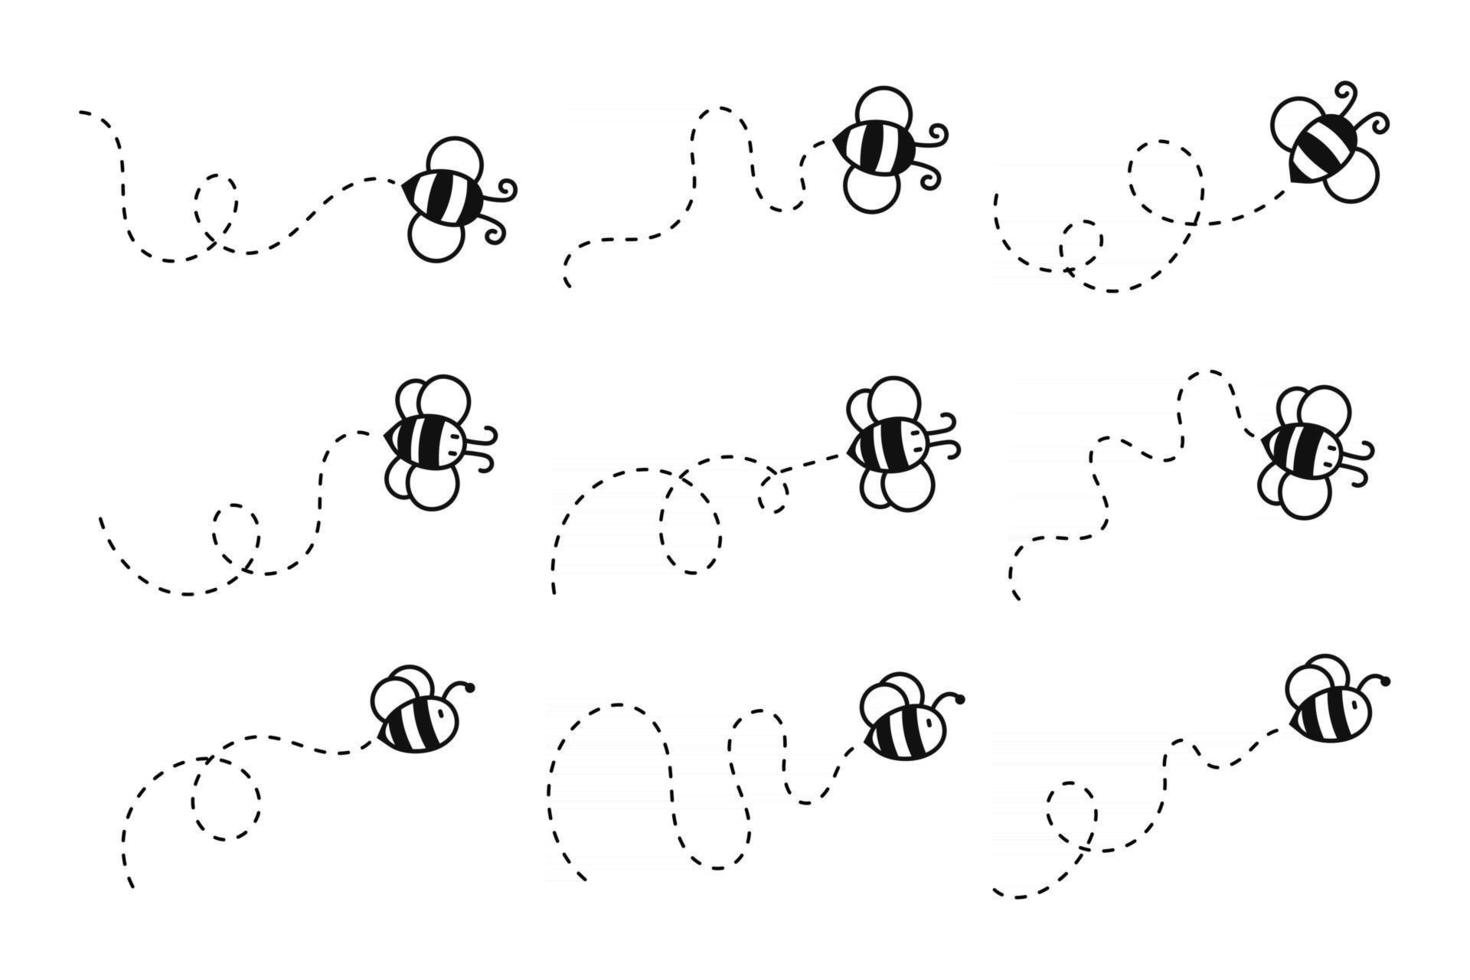 percorso di volo dell'ape un'ape che vola in una linea tratteggiata percorso di volo di un'ape verso il miele vettore